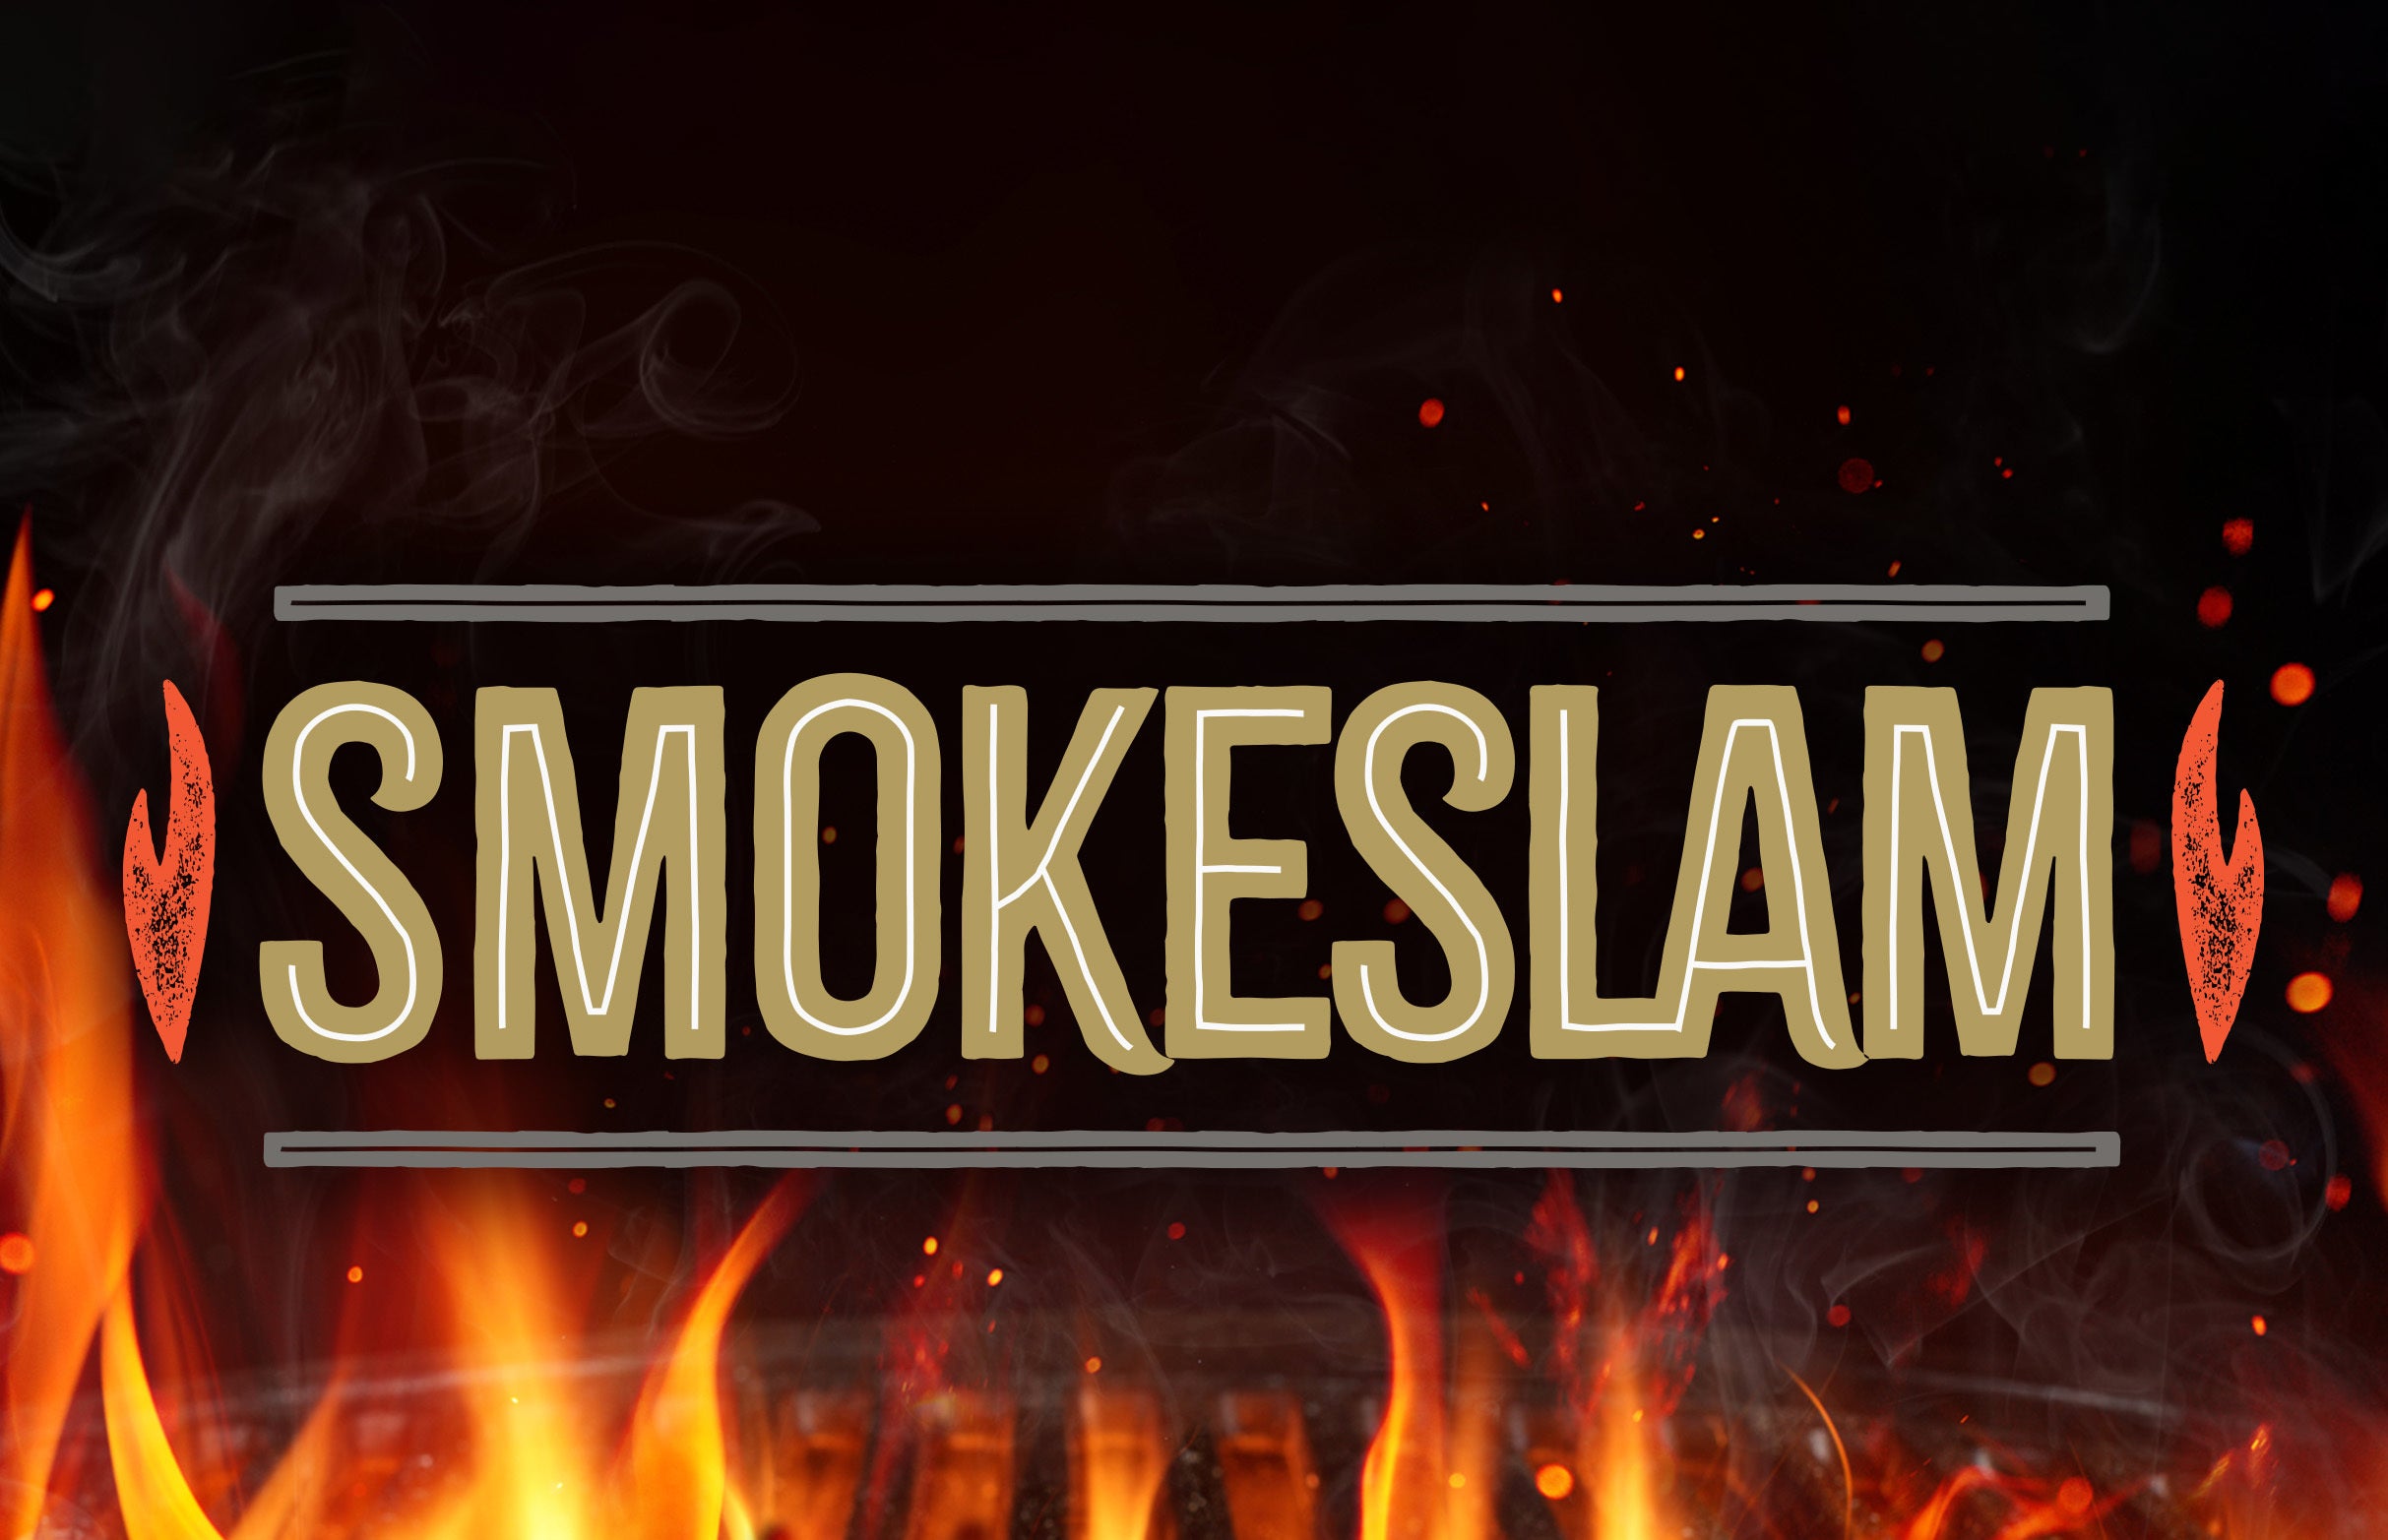 SmokeSlam at Tom Lee Park